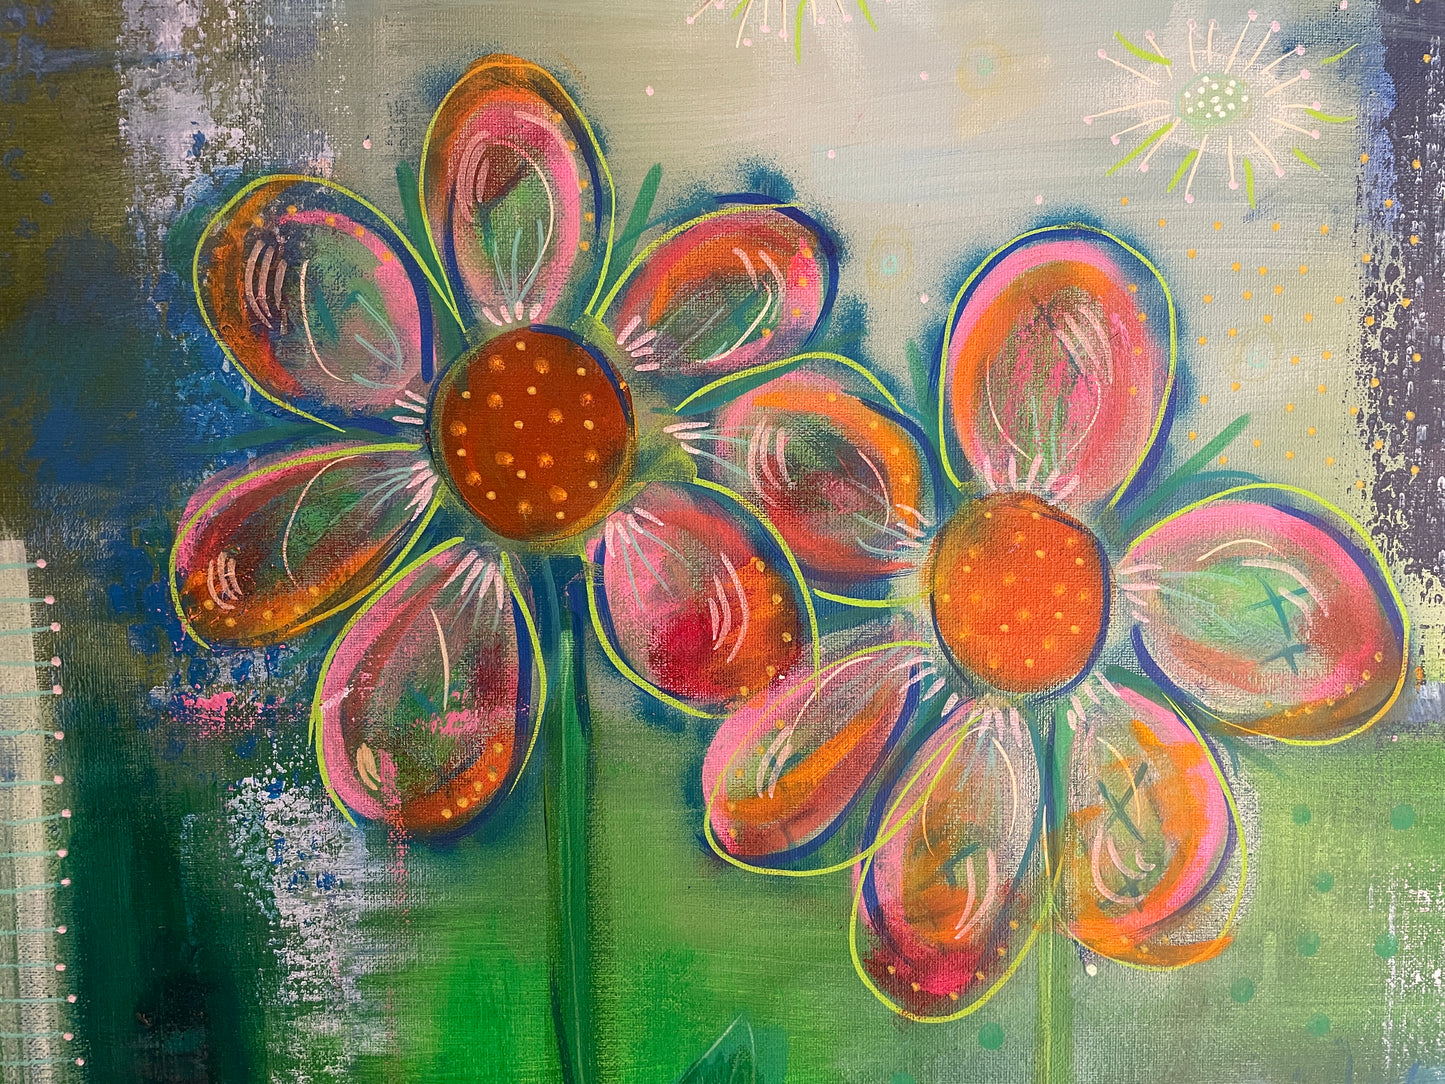 Stort, farverigt maleri. Abstrakt med blomster